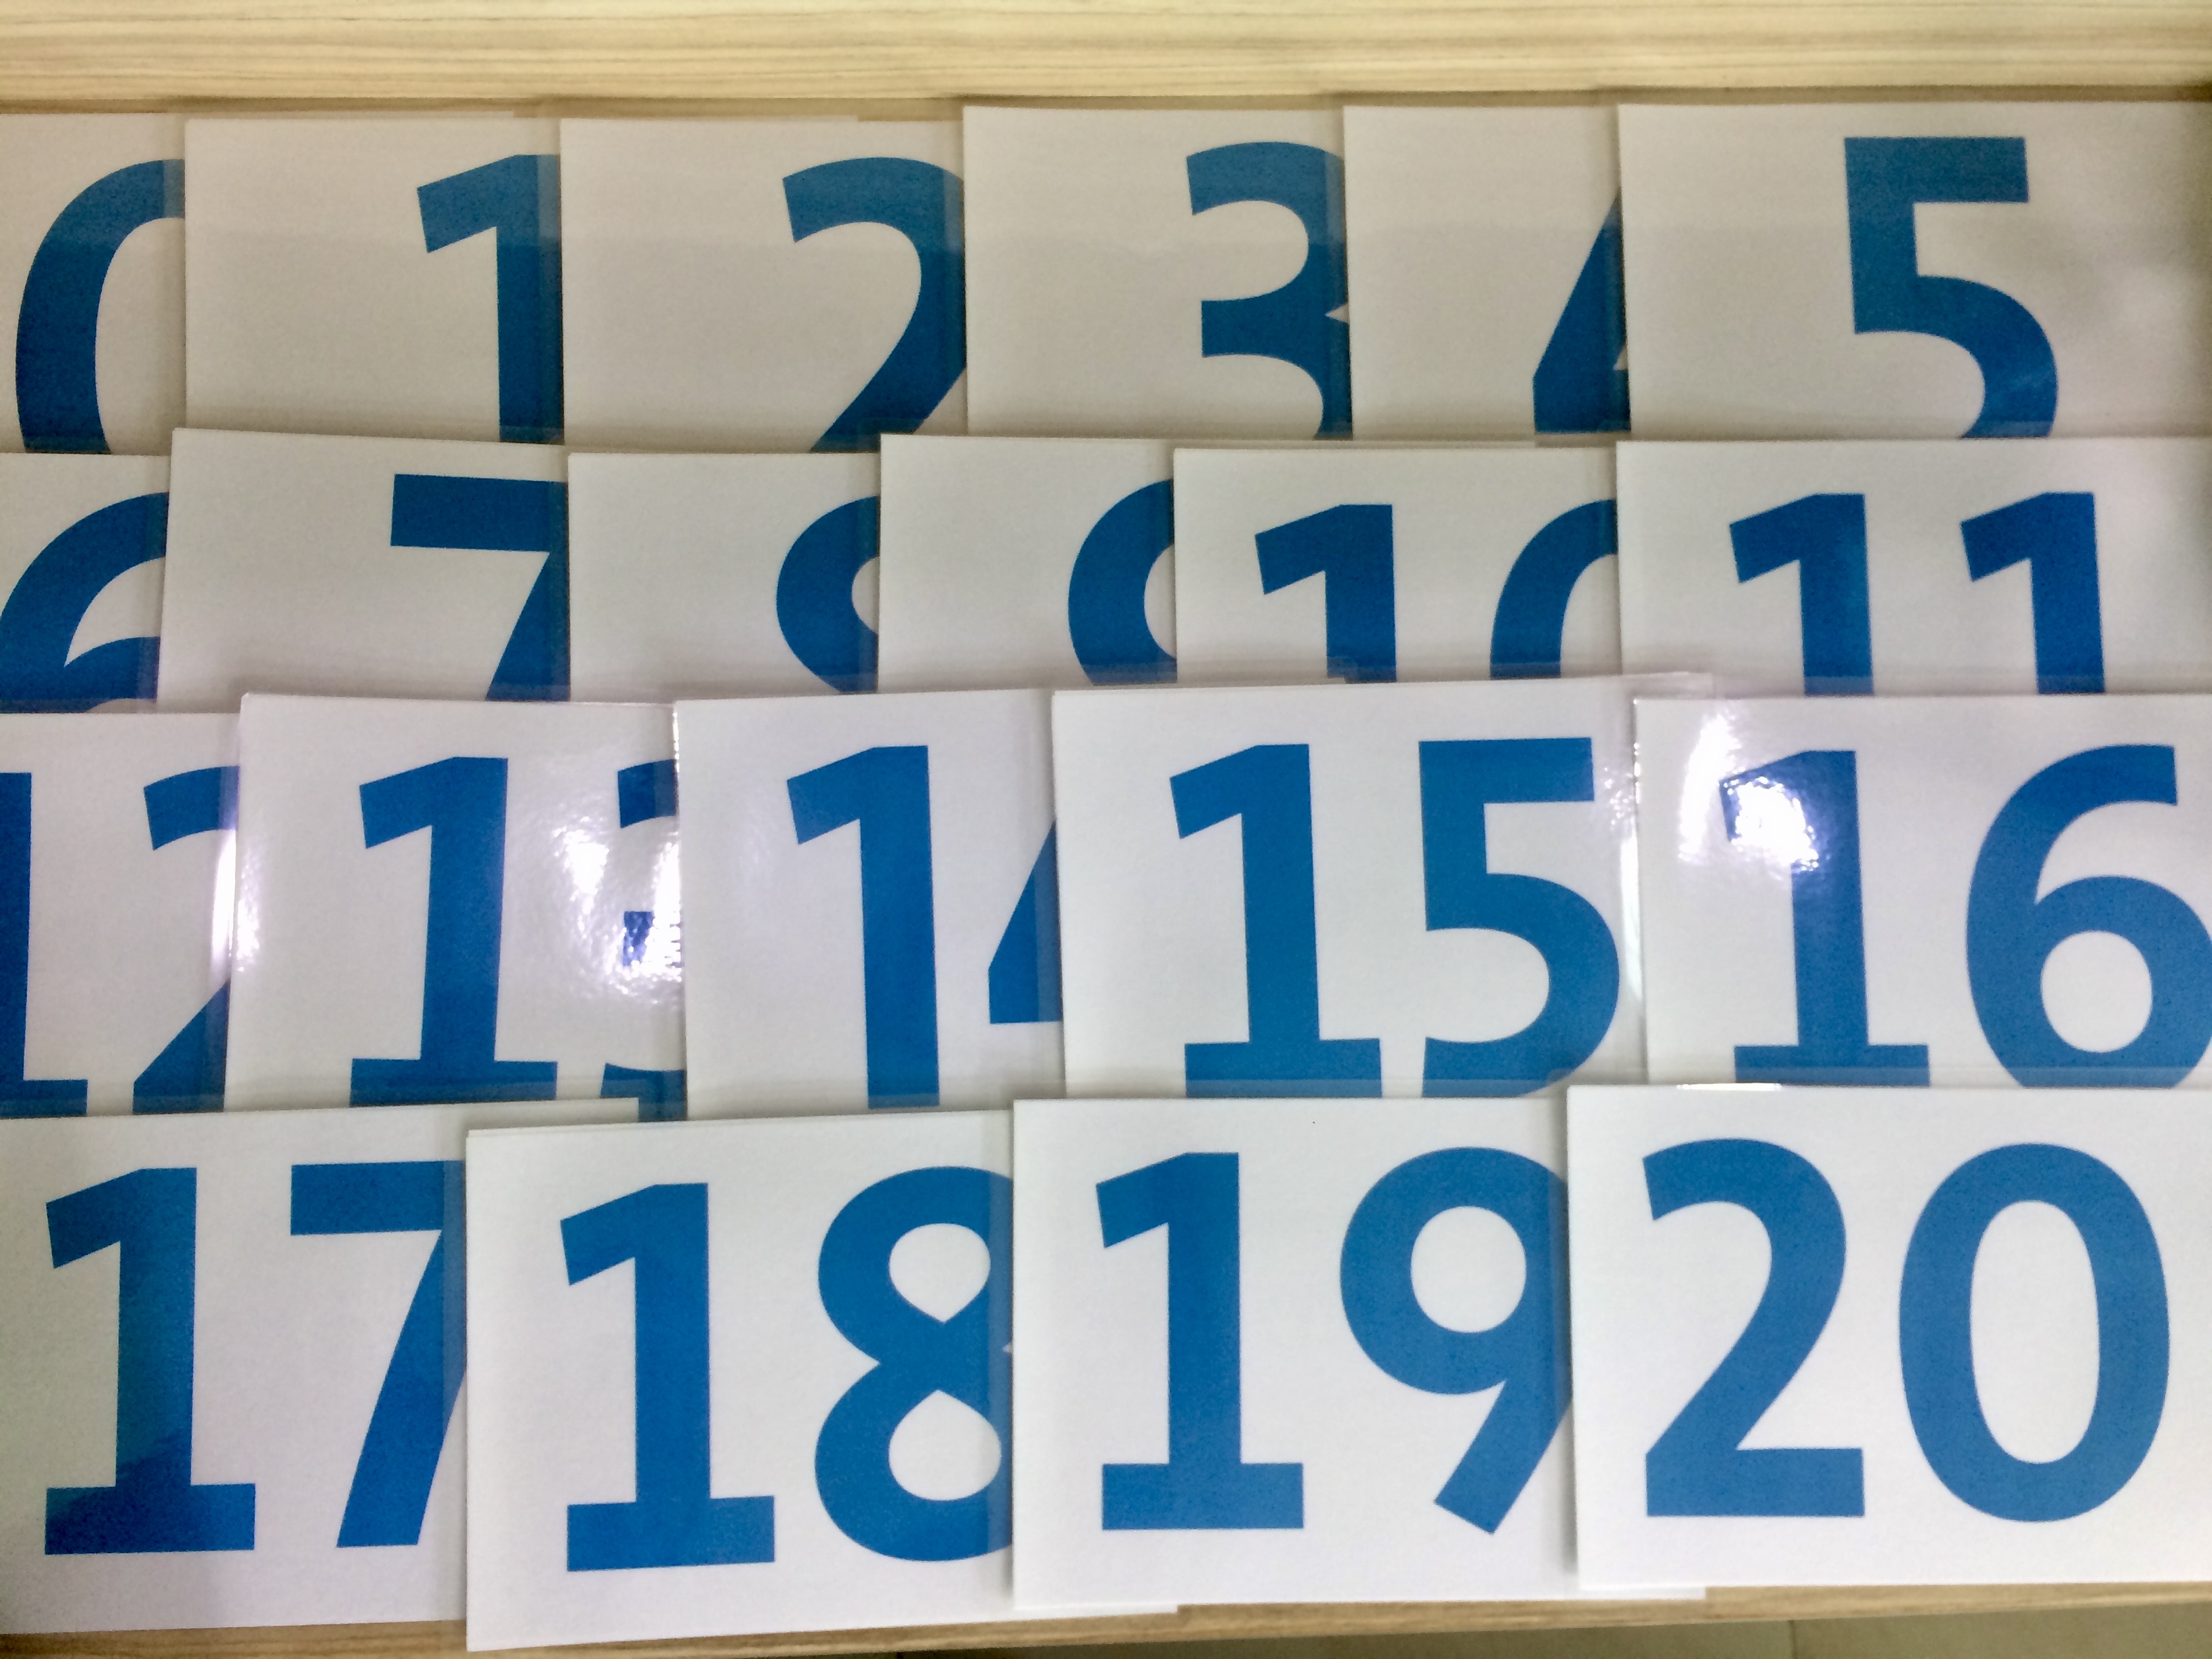 Ordinary number Flashcards - Thẻ học tiếng Anh chủ đề số đếm thông thường - 21 cards: from 0 to 20